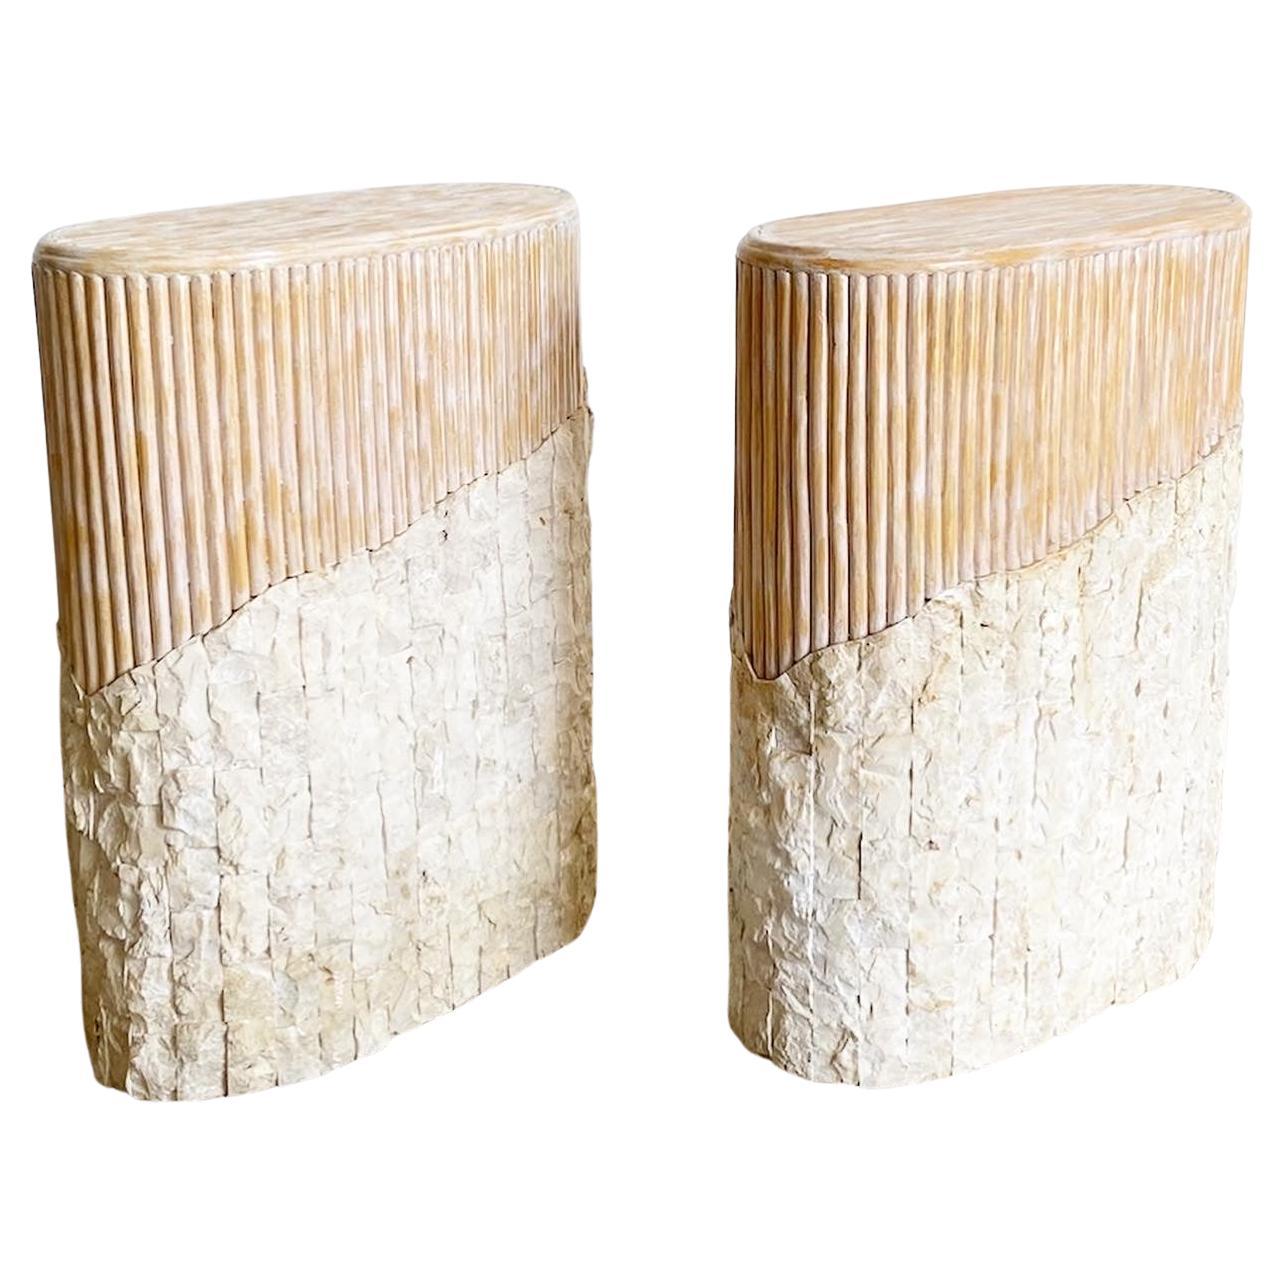 Boho Chic Mosaik Stein und Split Reed Sockel - ein Paar